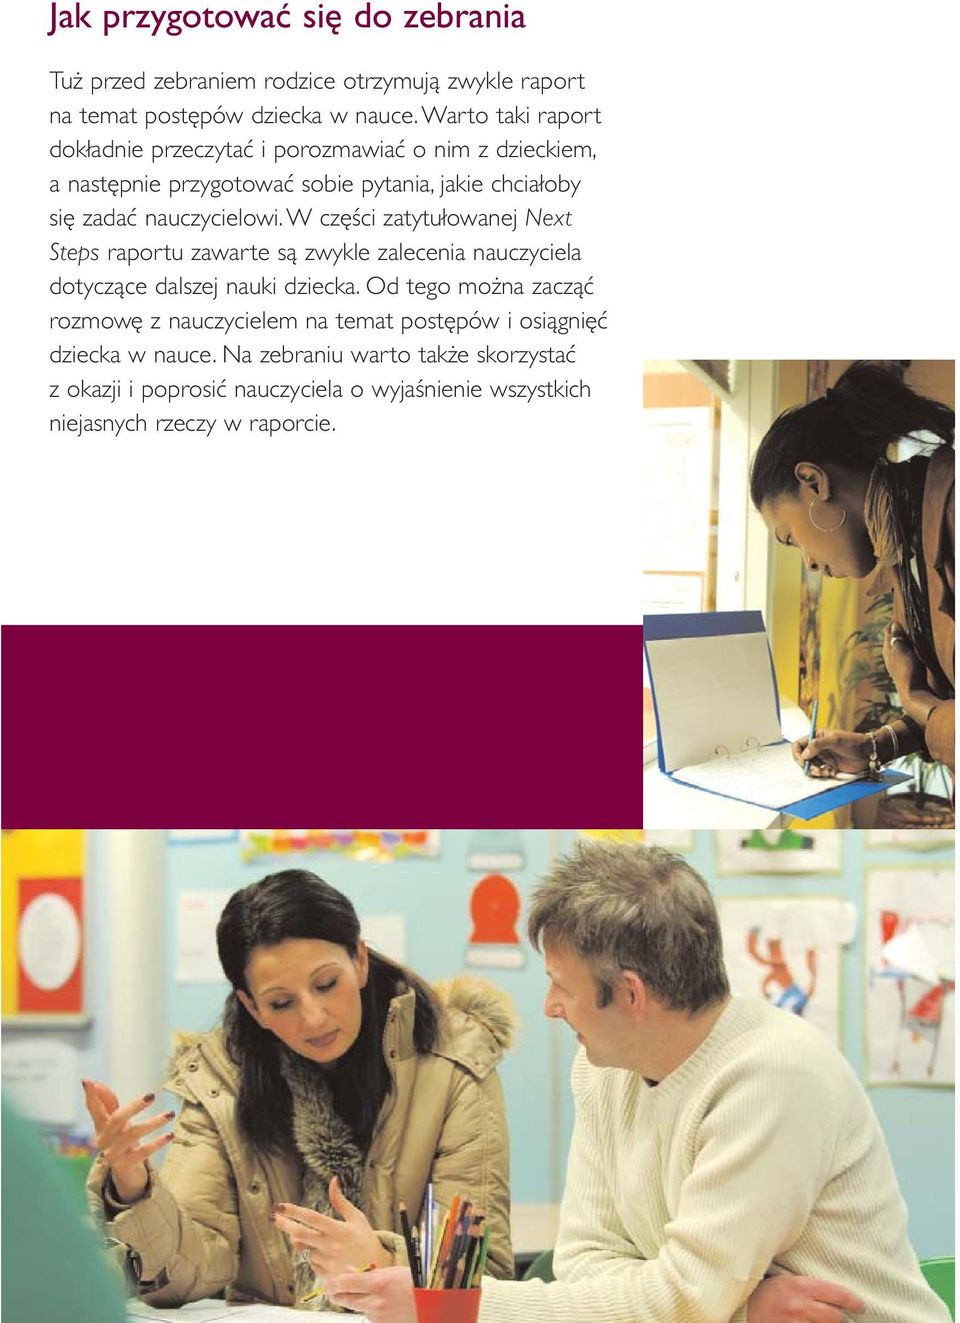 nauczycielowi. W części zatytułowanej Next Steps raportu zawarte są zwykle zalecenia nauczyciela dotyczące dalszej nauki dziecka.